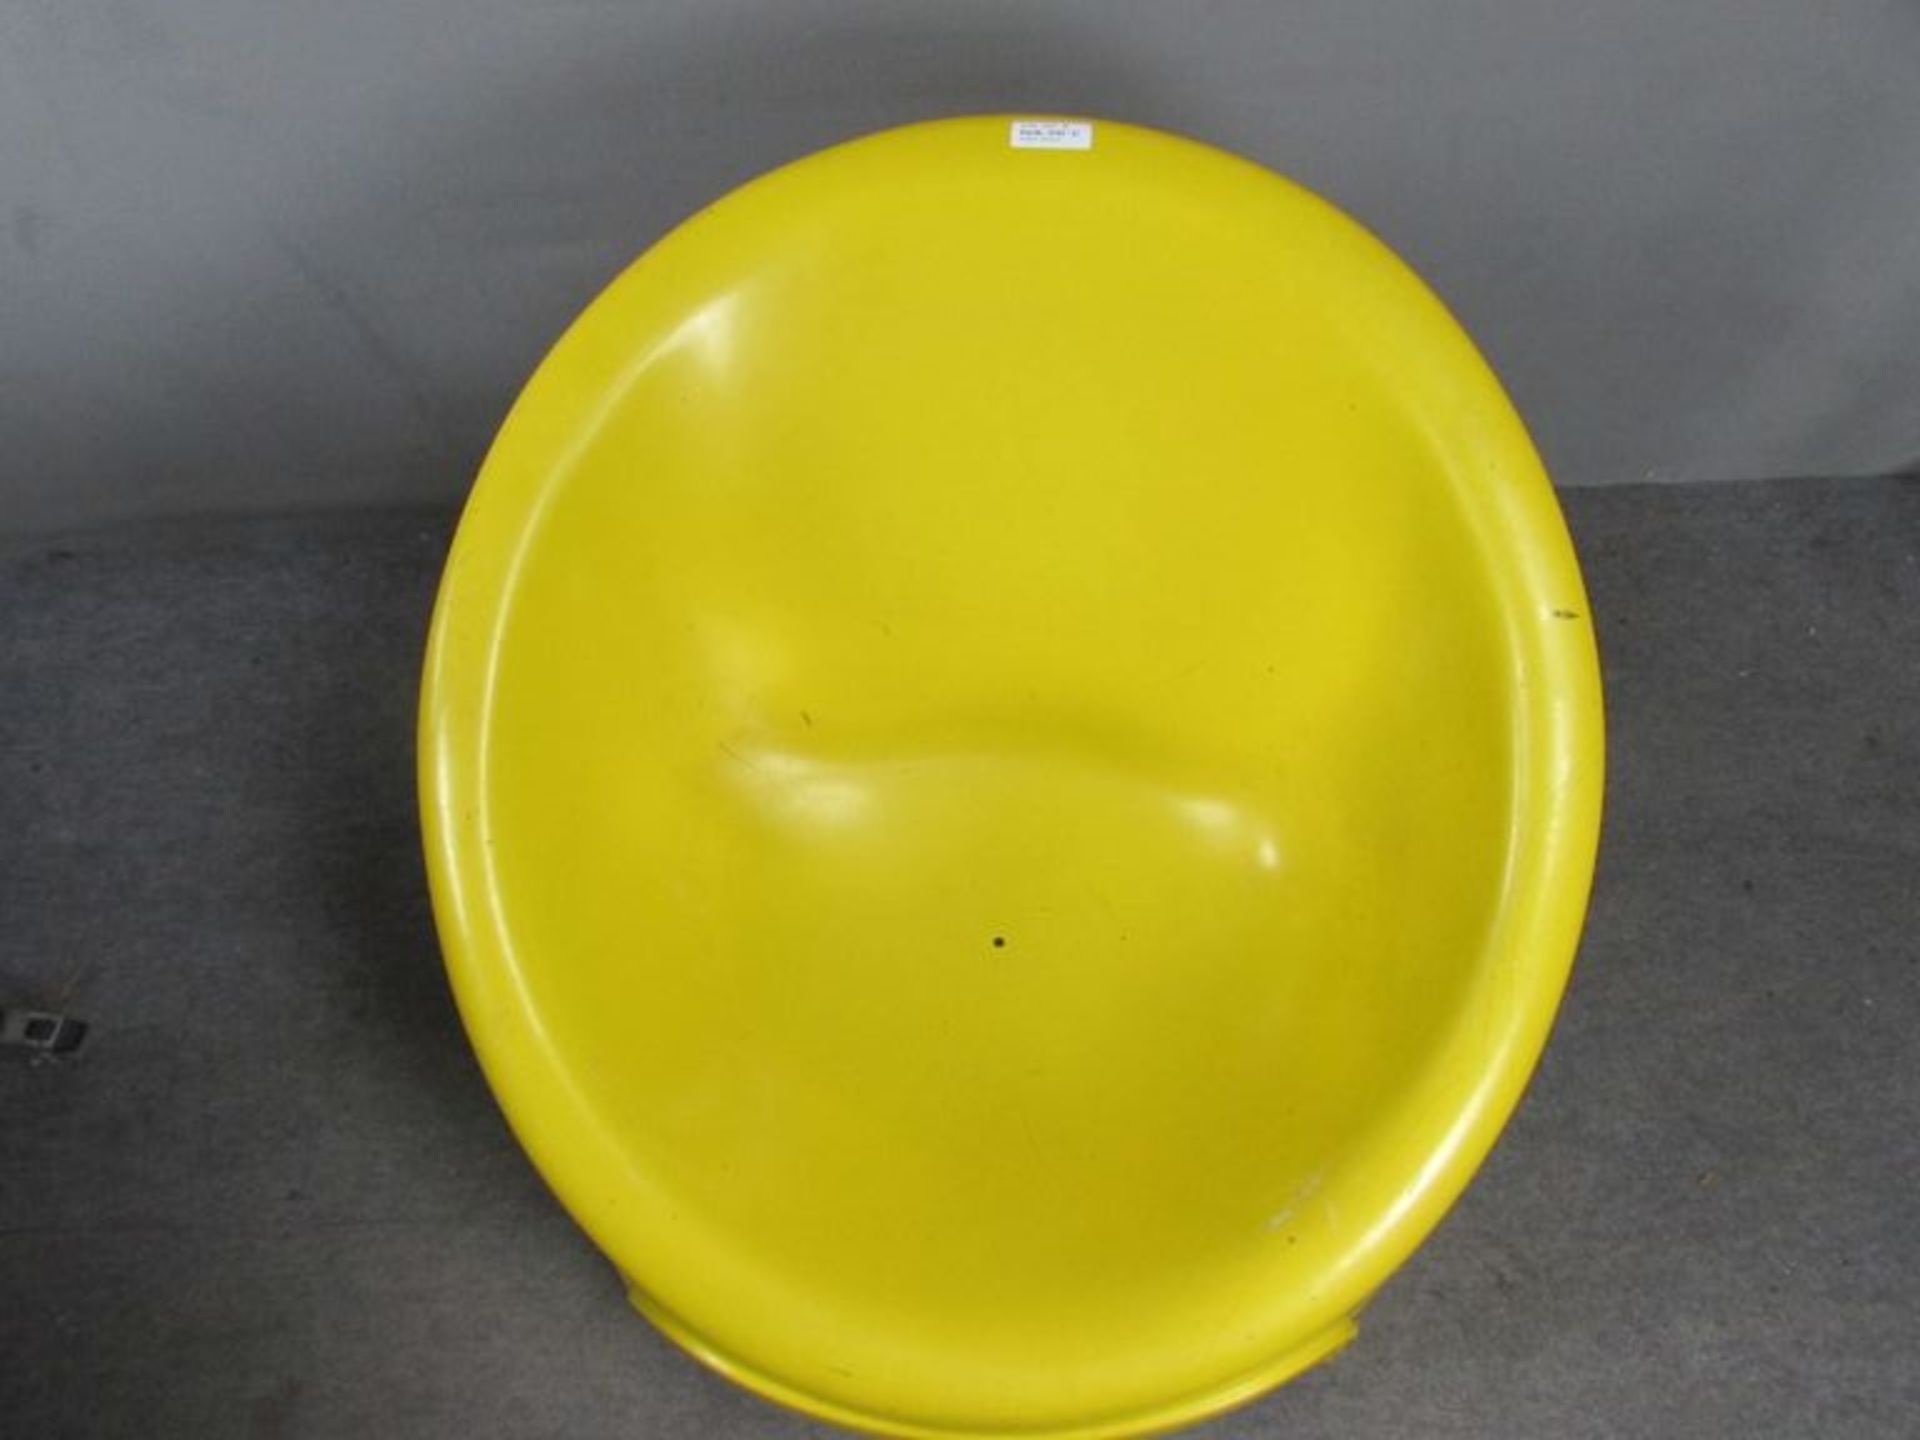 Space Age, 70er Jahre, Fieberglas, Loungechair, gelb, 73 cm hoch - Bild 2 aus 3